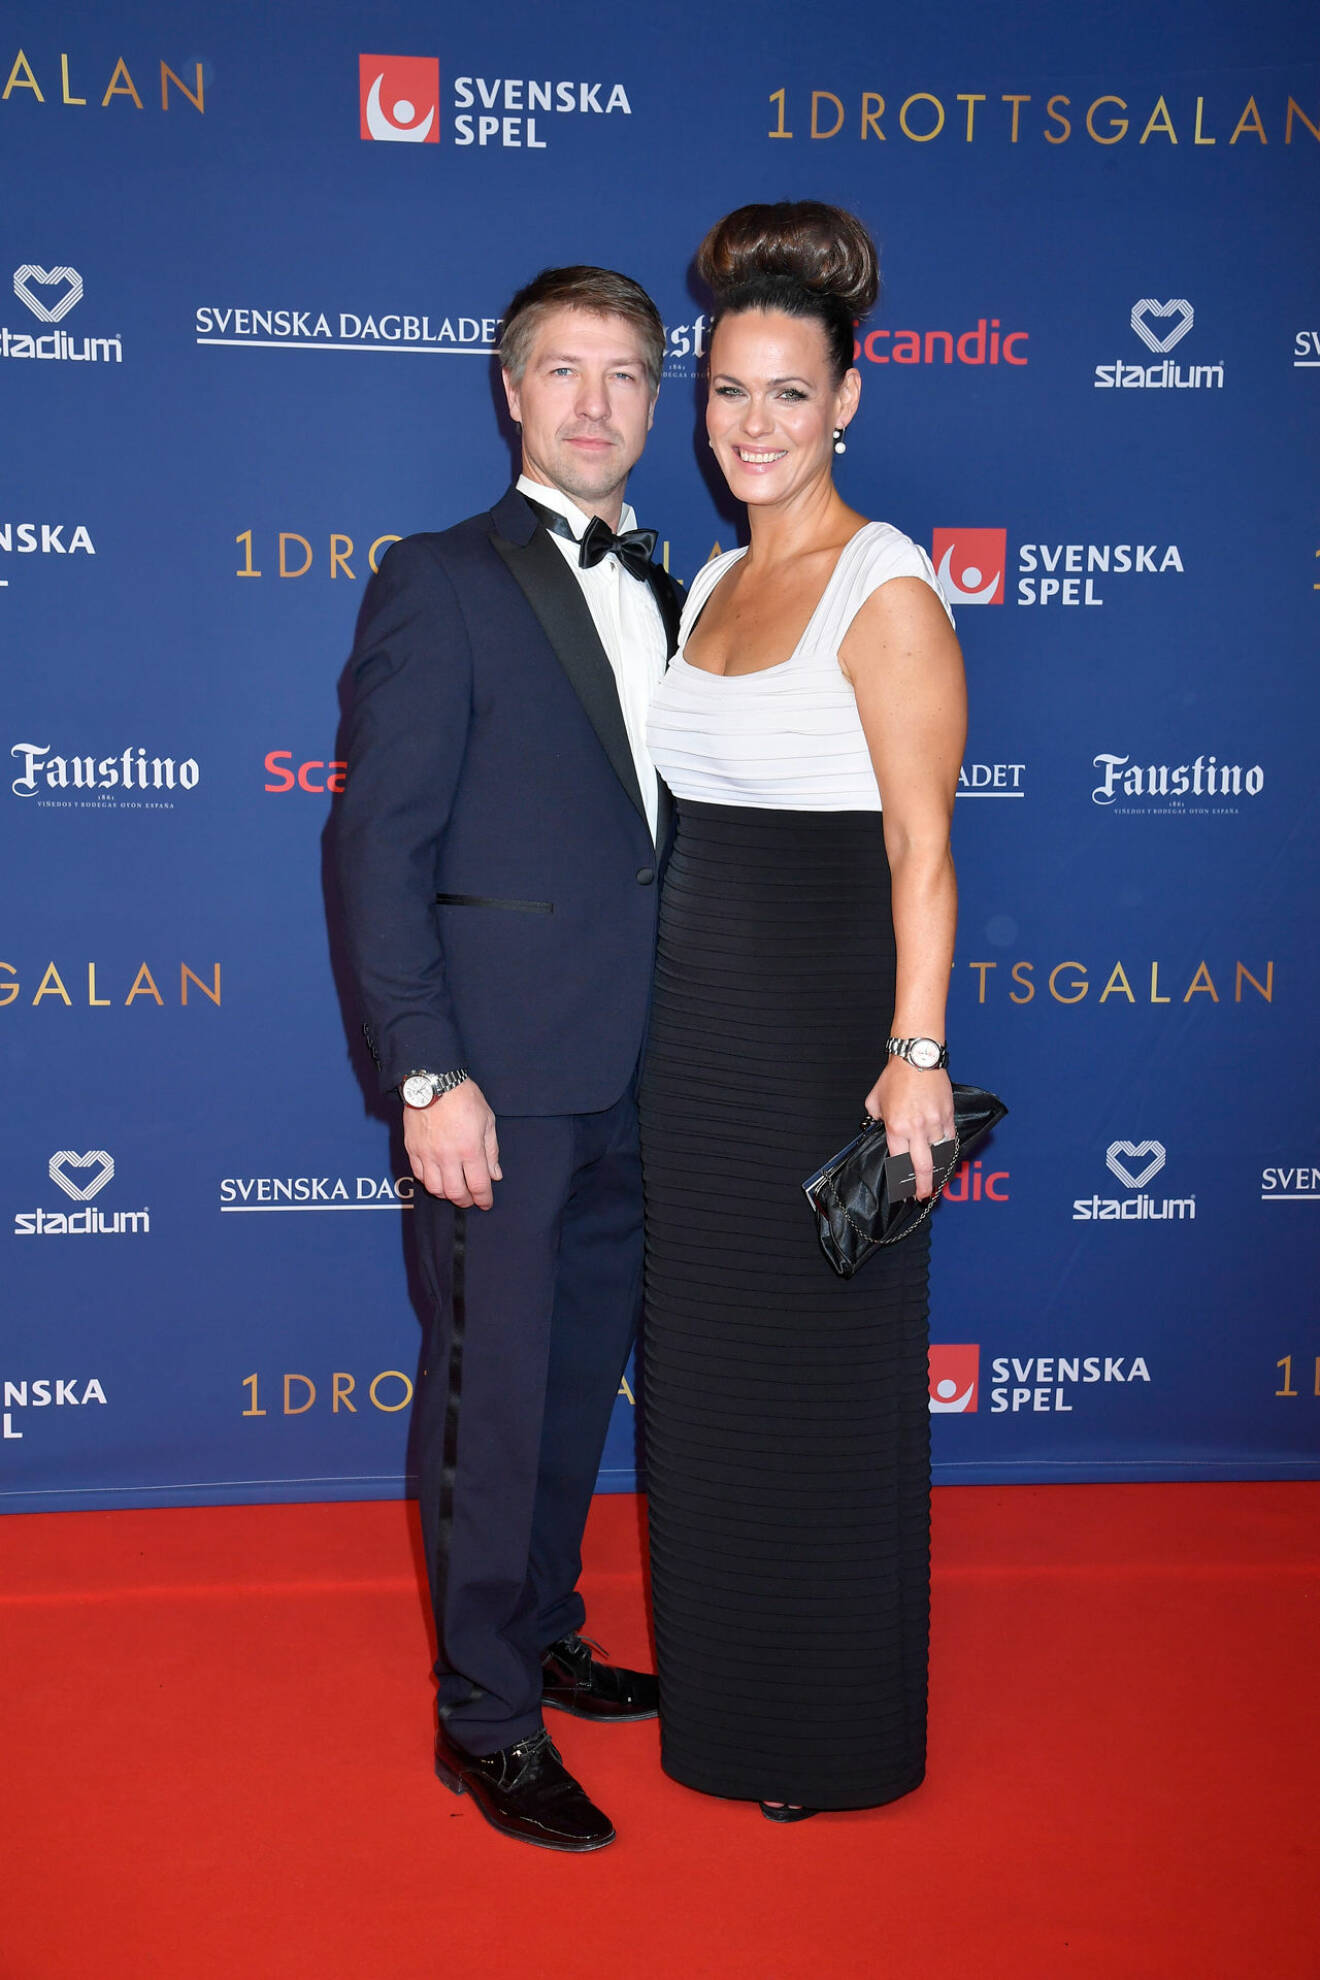 Suzanne Sjögren och Pontus Westergren på röda mattan på Idrottsgalan 2020